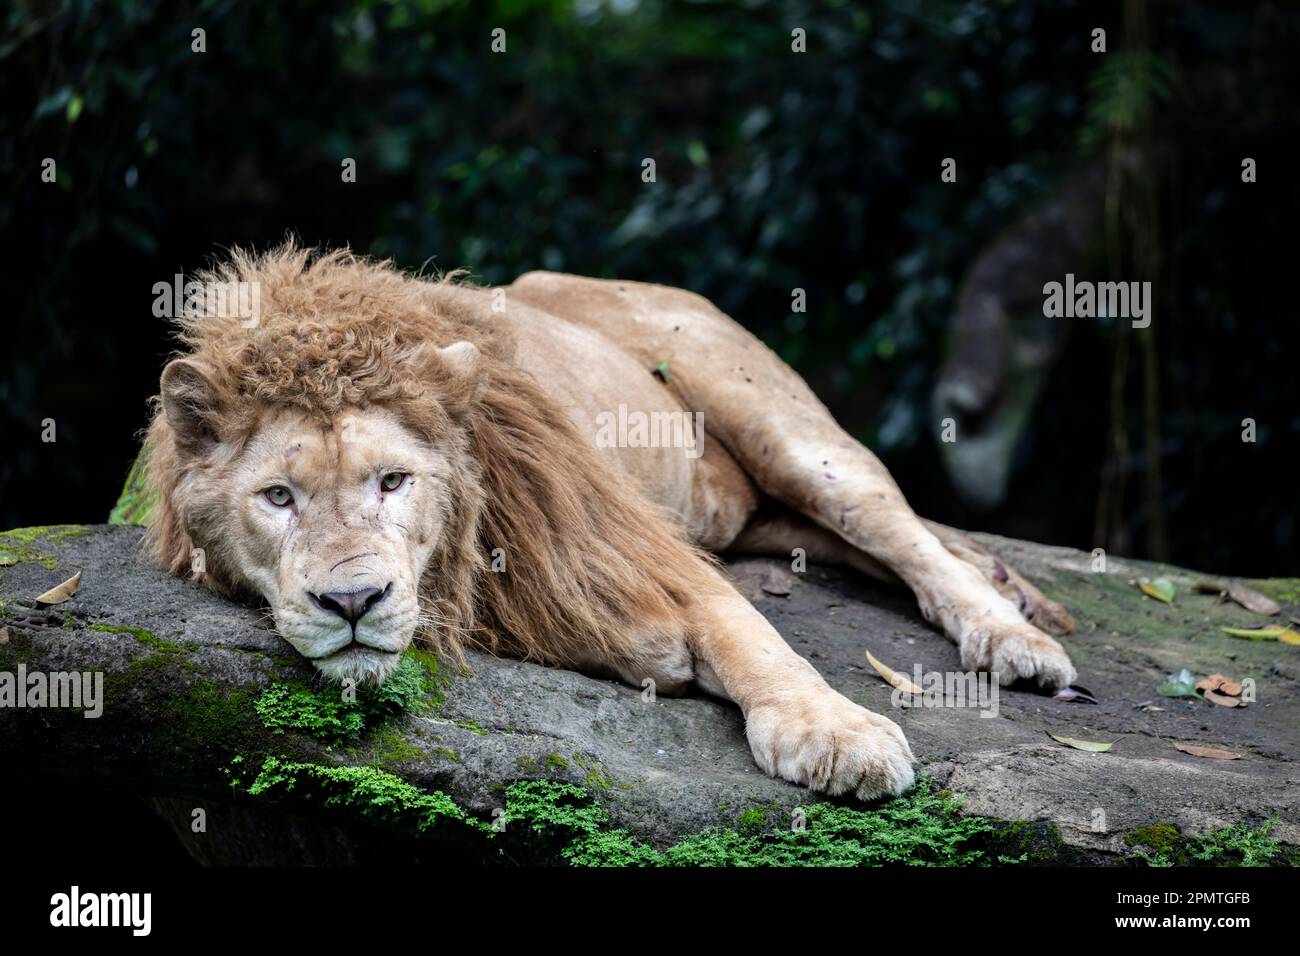 Il leone bianco è una rara mutazione di colore del leone, in particolare il leone dell'Africa australe. I leoni bianchi non sono albini. Foto Stock